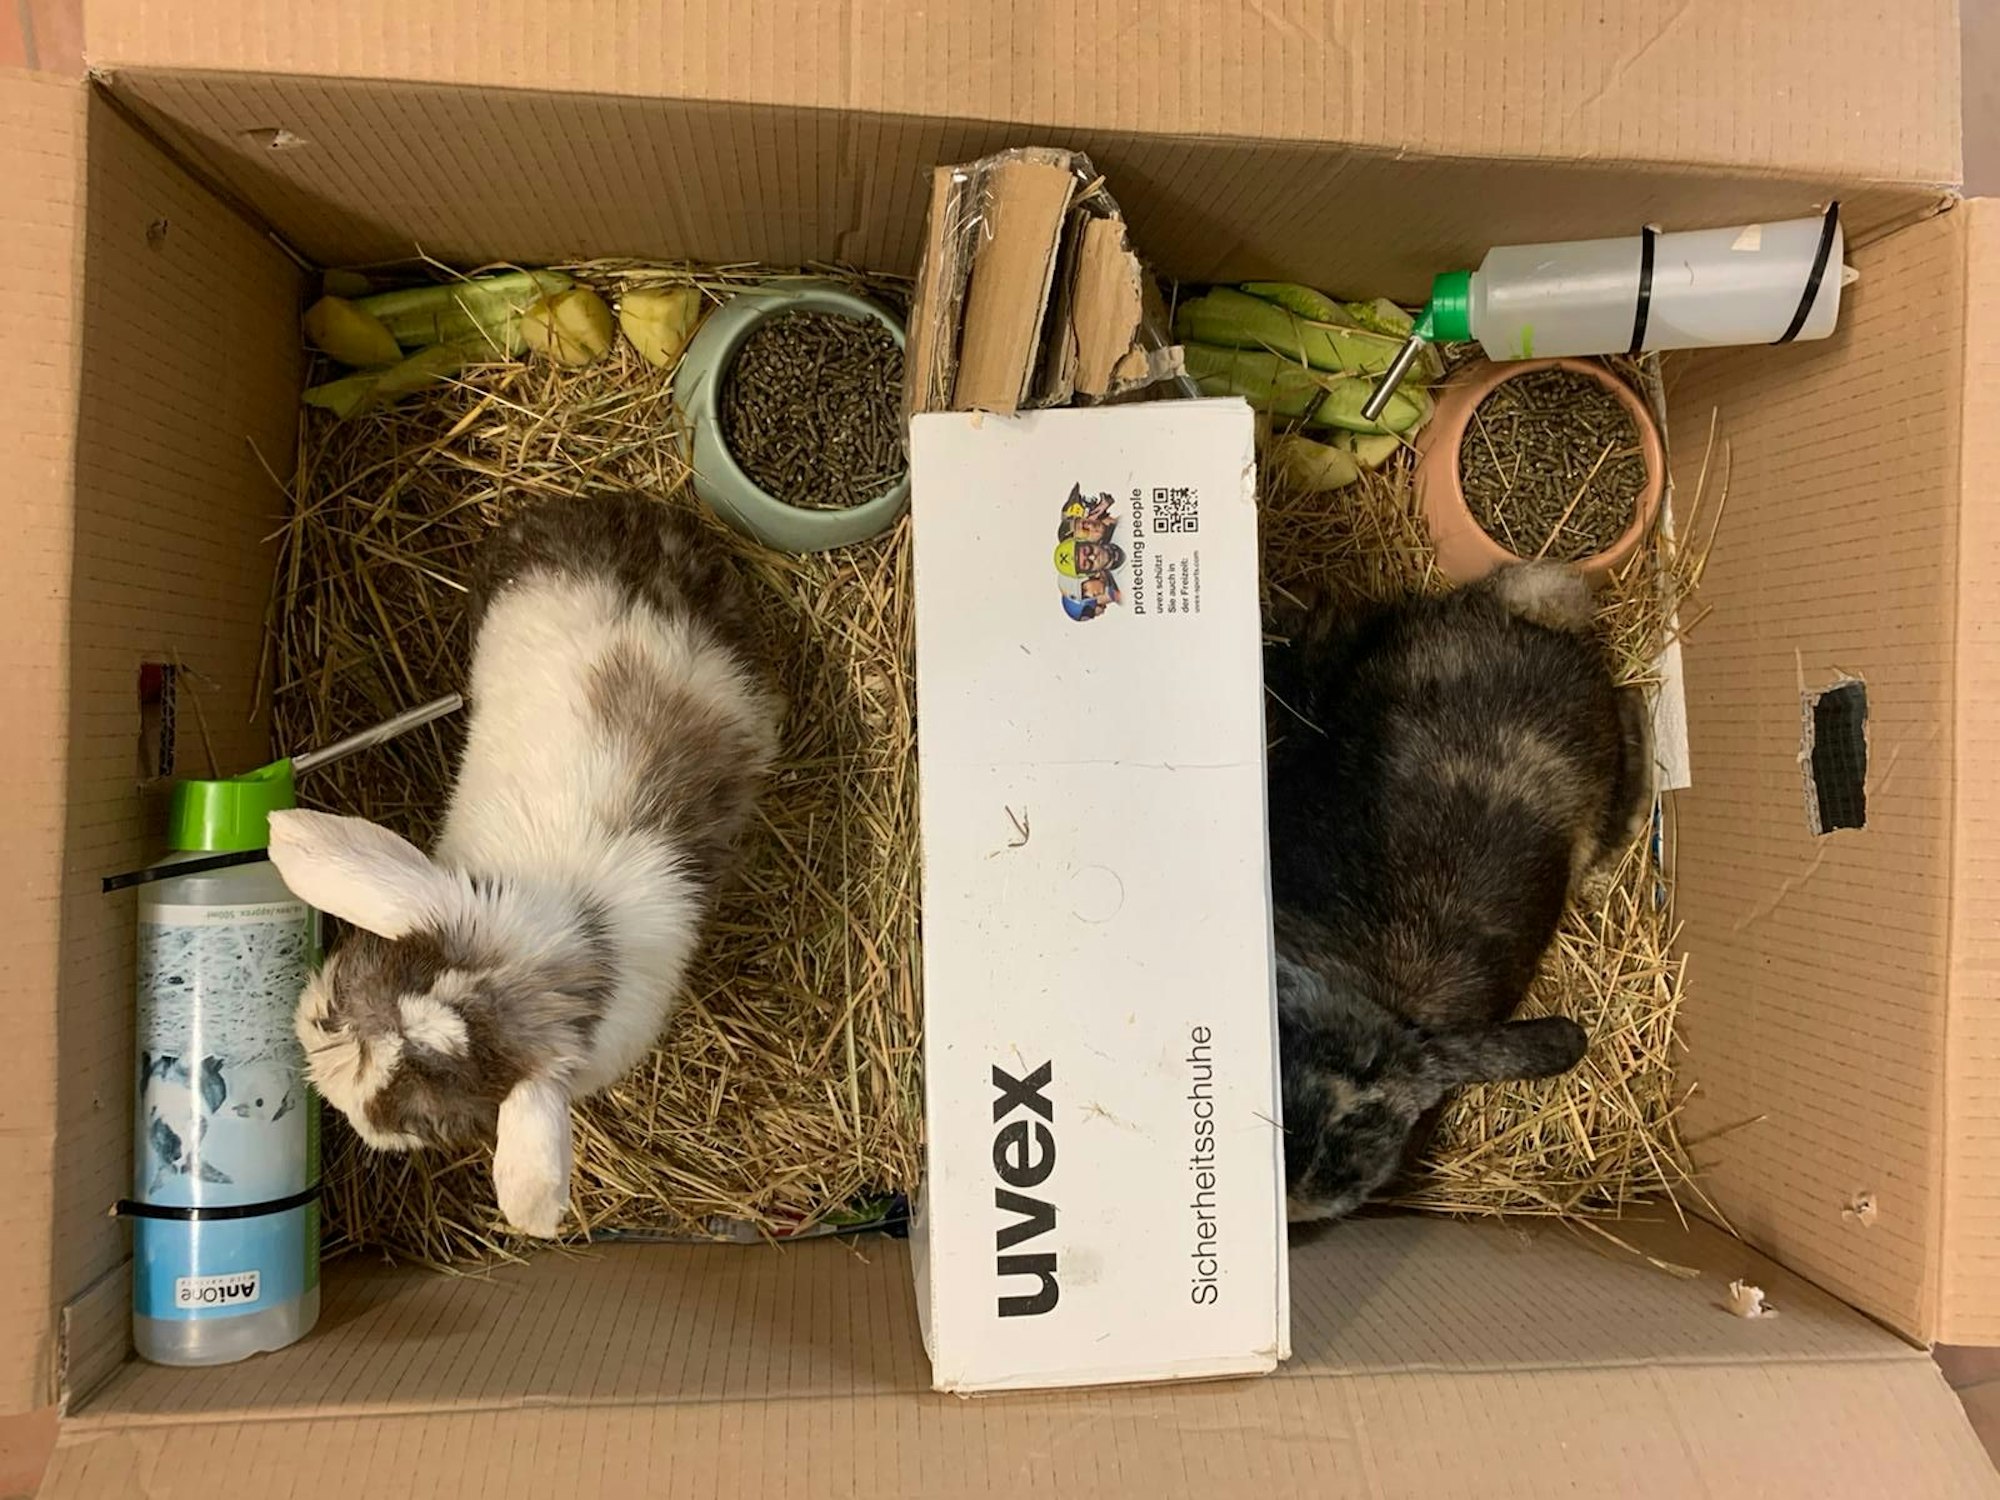 tierheim - kaninchen in kiste